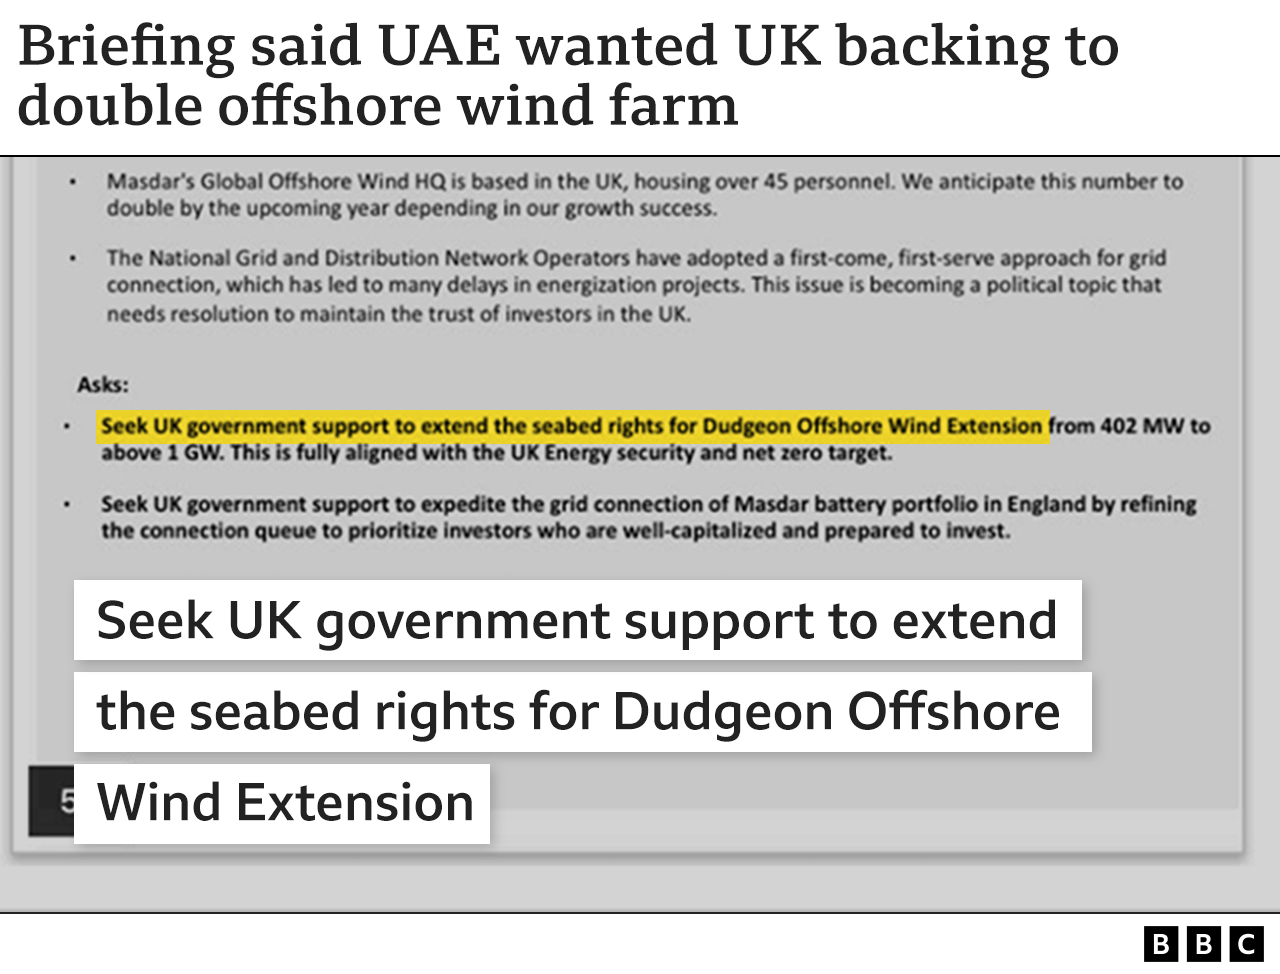 صورة تظهر اقتباس من وثيقة إحاطة لاجتماع فريق كوب 28 الإماراتي مع المملكة المتحدة، تقول إنهم "سيسعون للحصول على دعم حكومة المملكة المتحدة لتمديد حقوق قاع البحر لمحطة دادجون لطاقة الرياح البحرية.